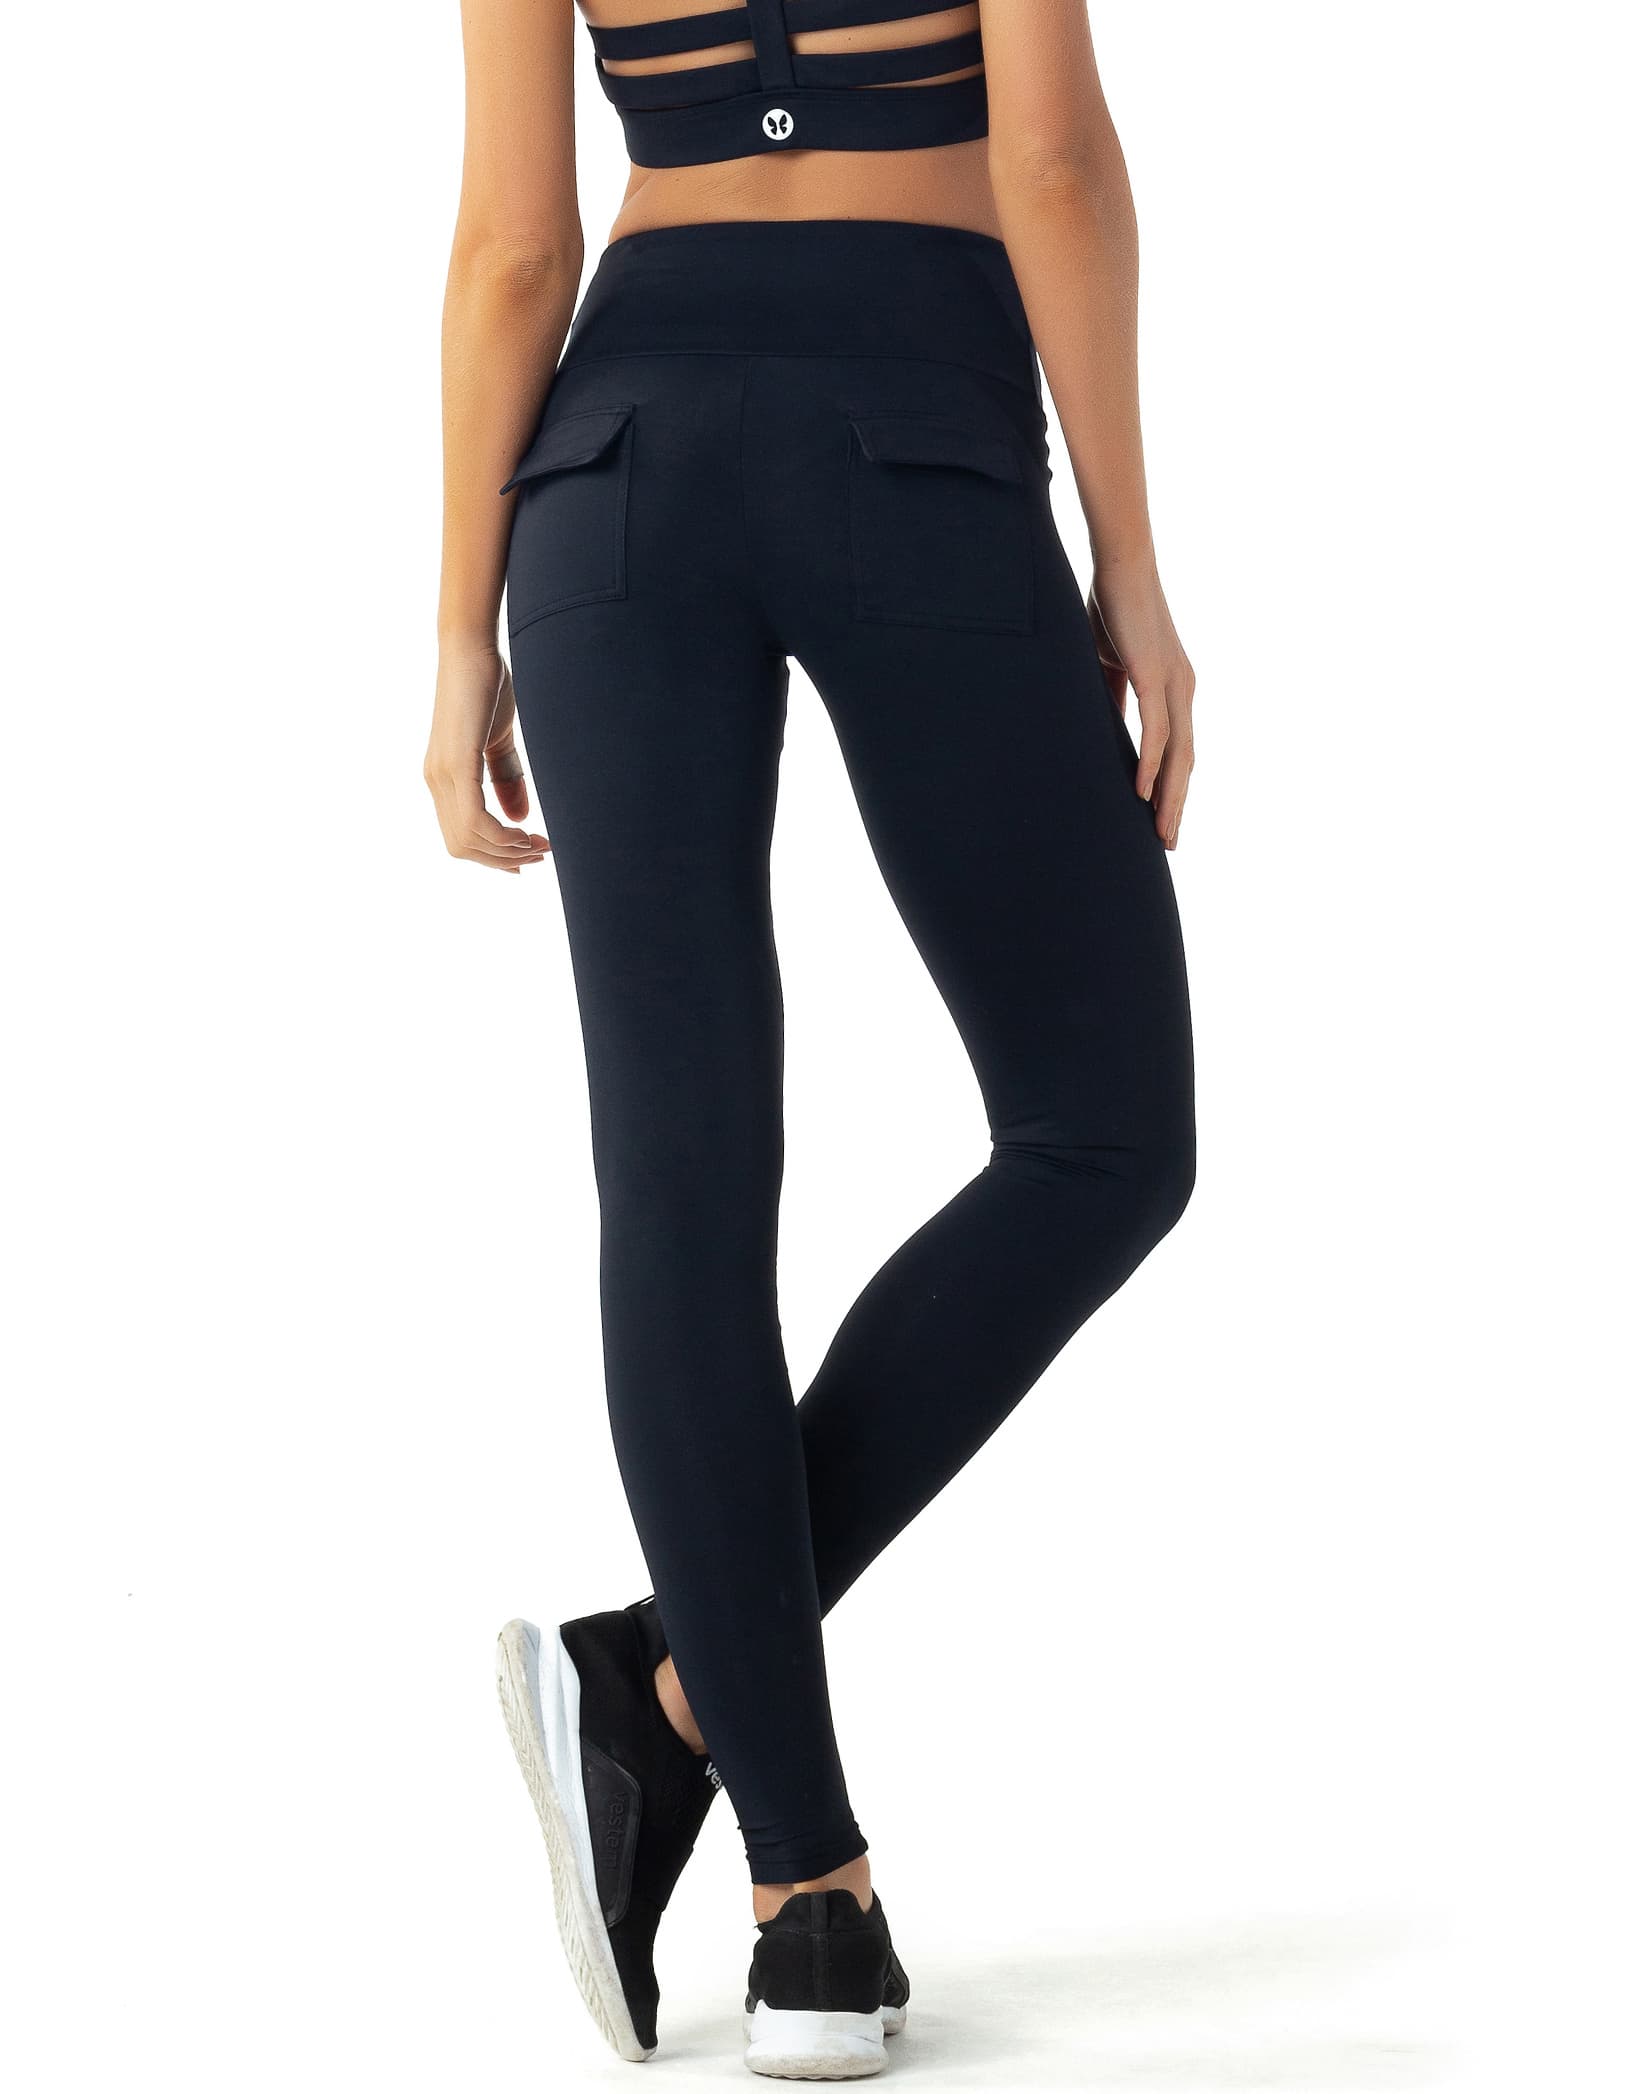 Vestem - Black Katana leggings - FS1222.C0002